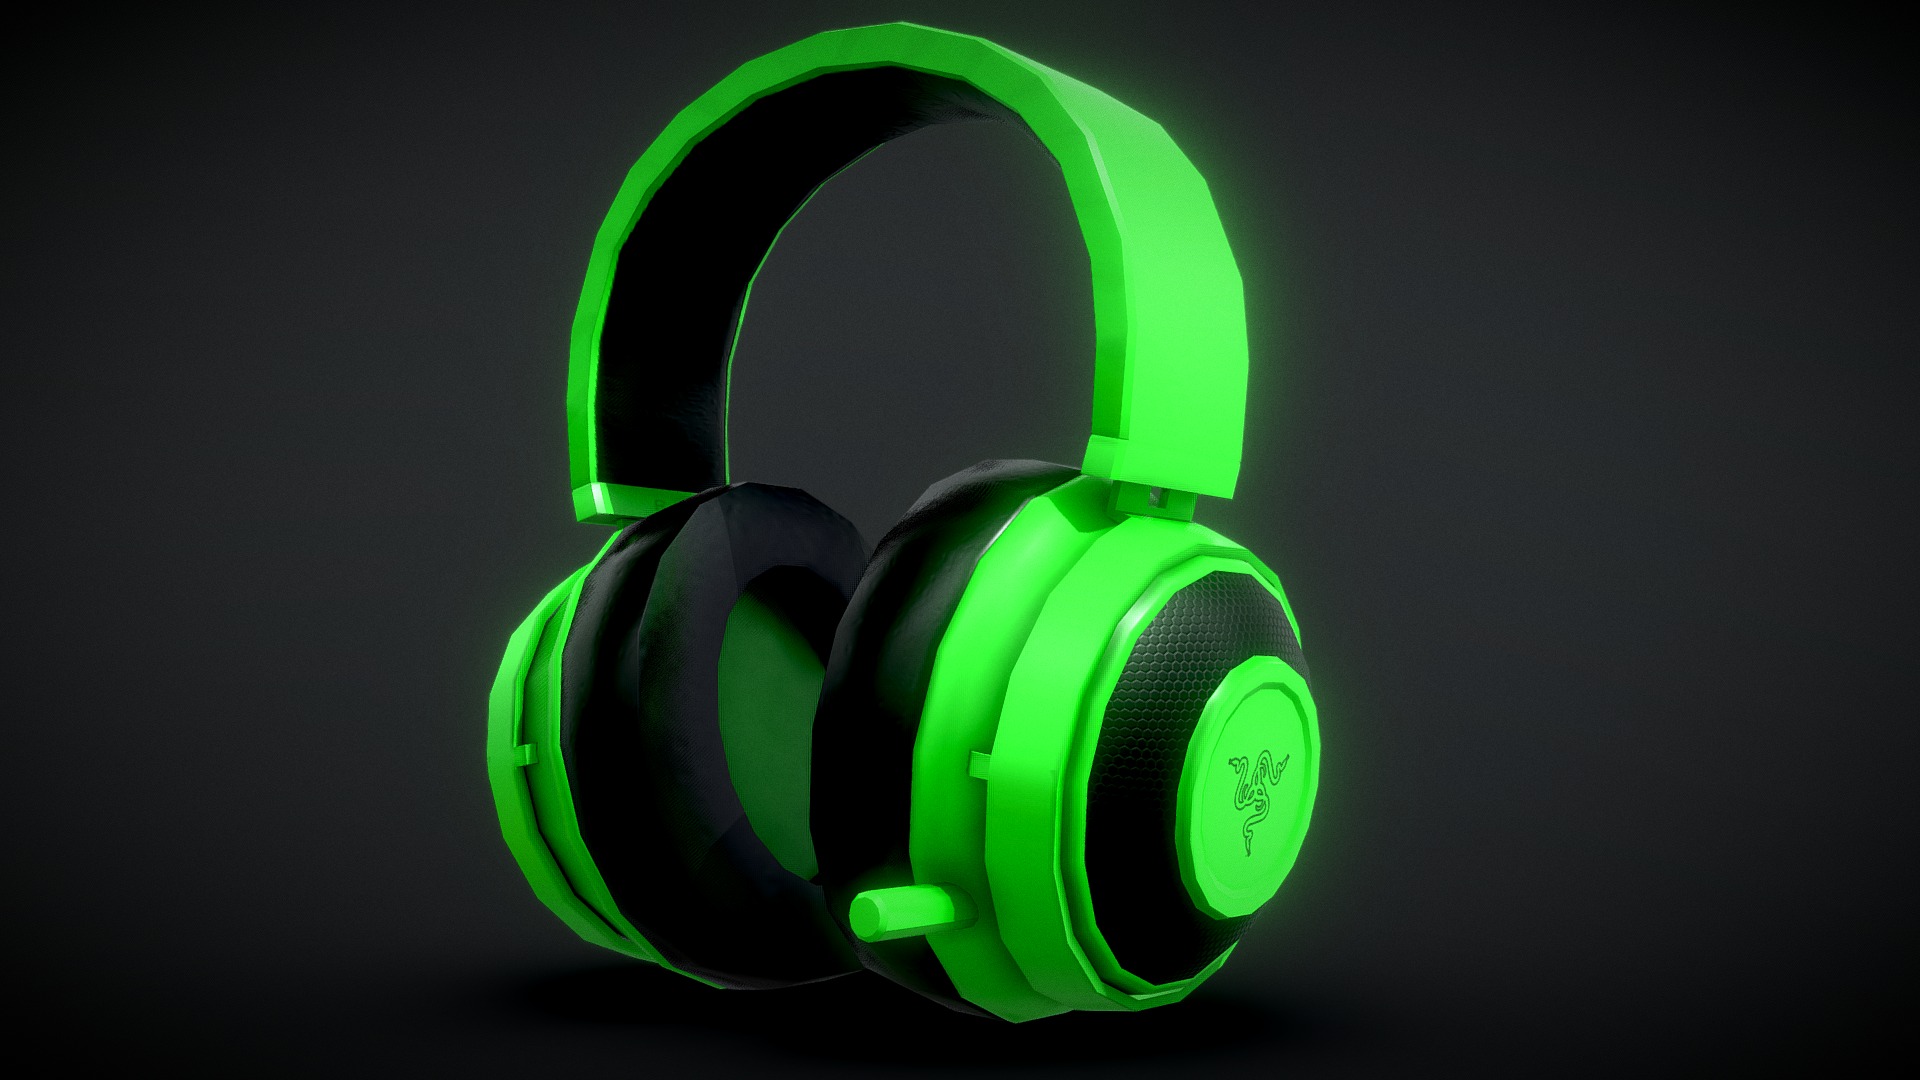 3D model Razer – Kraken Pro V2 Headphones - This is a 3D model of the Razer - Kraken Pro V2 Headphones. The 3D model is about a green headphones with green lights.